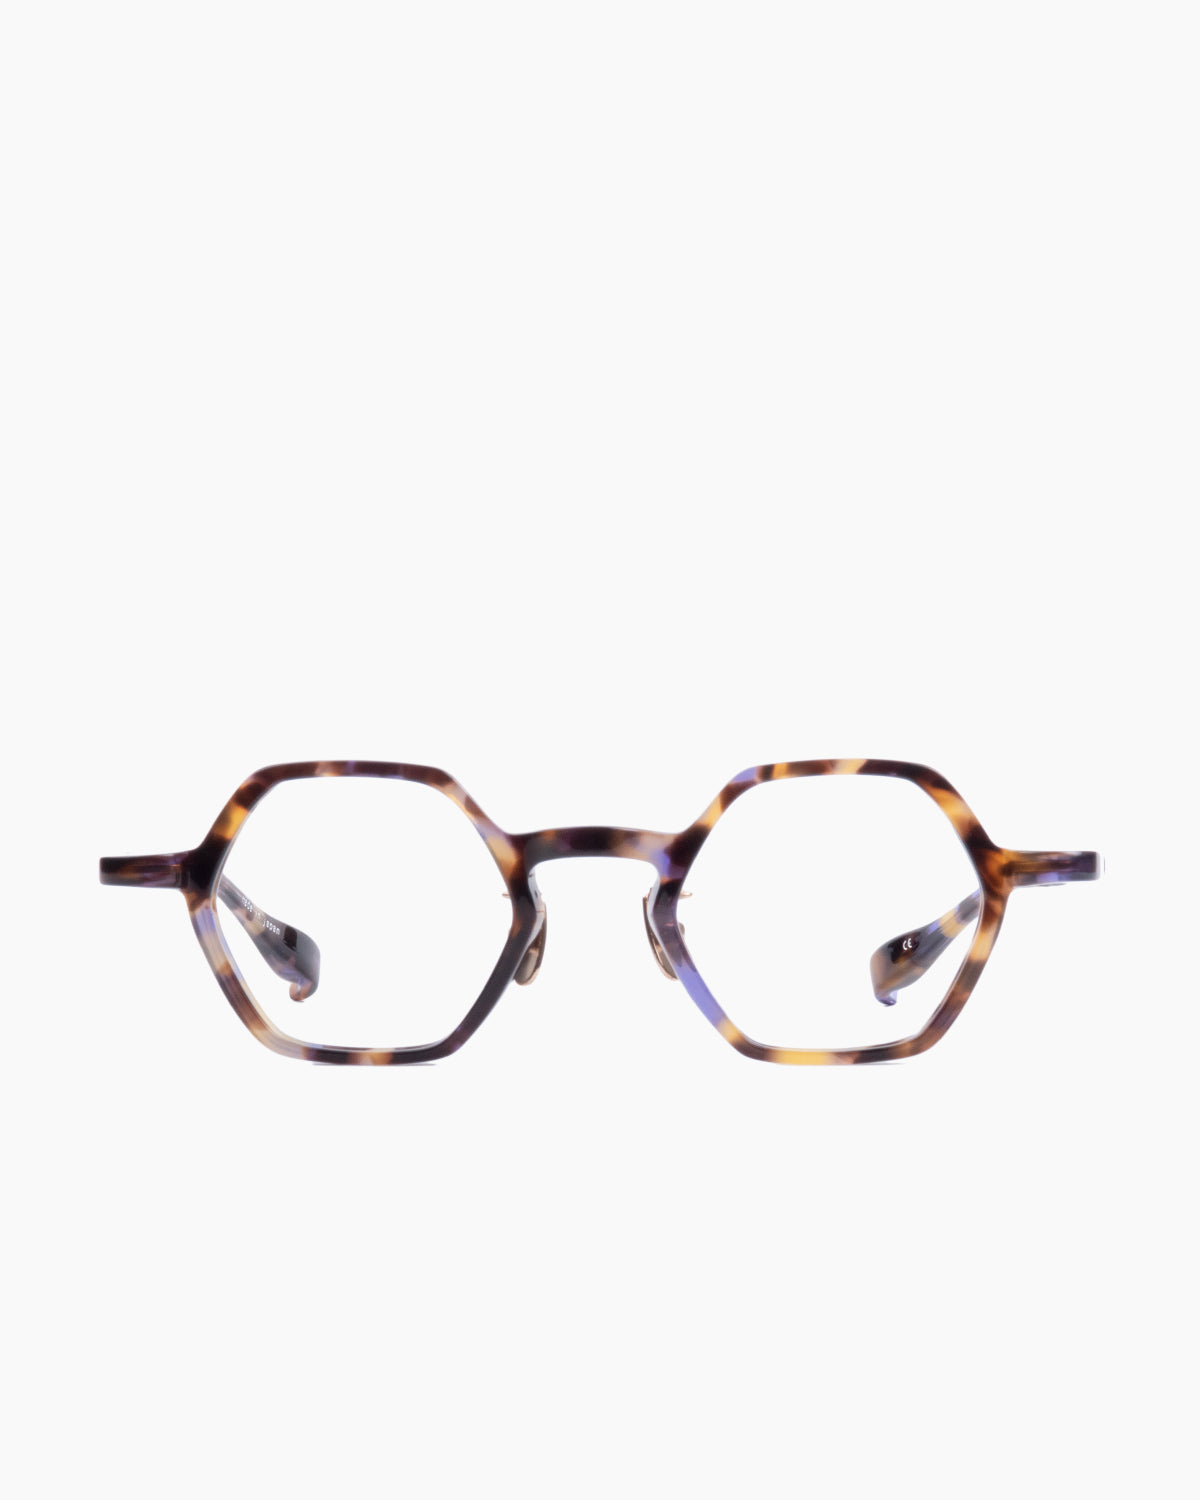 Factory 900 - Yu - 721 | Bar à lunettes:  Marie-Sophie Dion